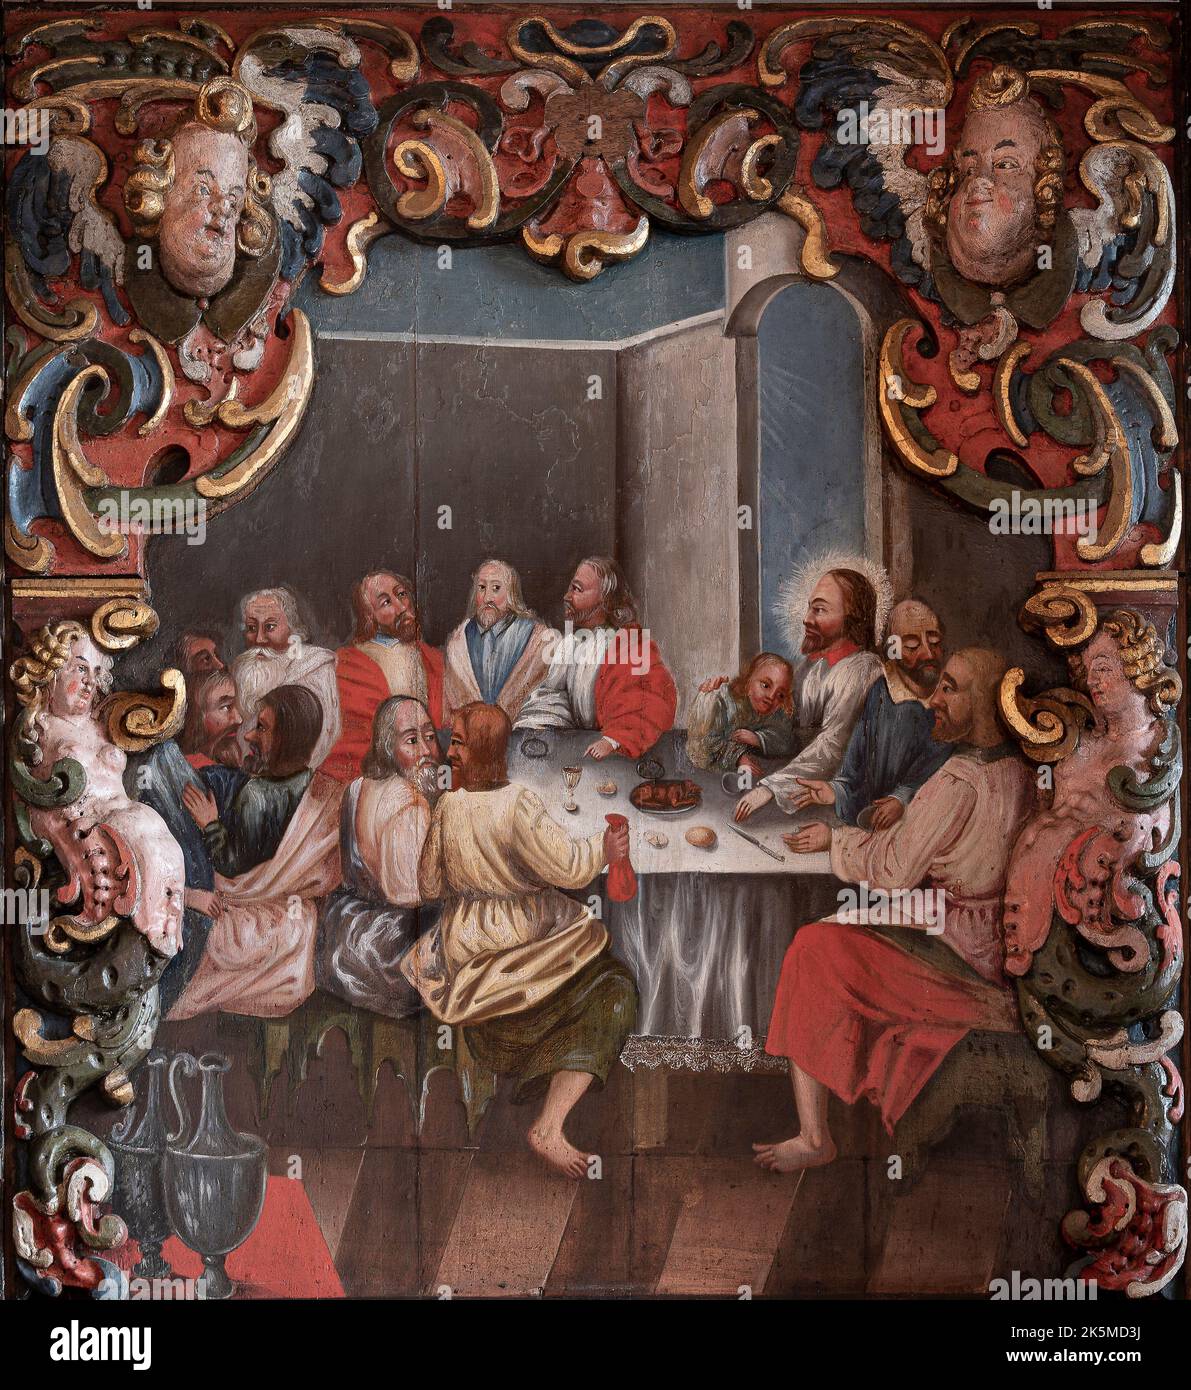 Dernier dîner, peinture de 1750 par un artiste inconnu représentant le dernier souper avec Jésus et ses diciples assis autour d'une table Banque D'Images